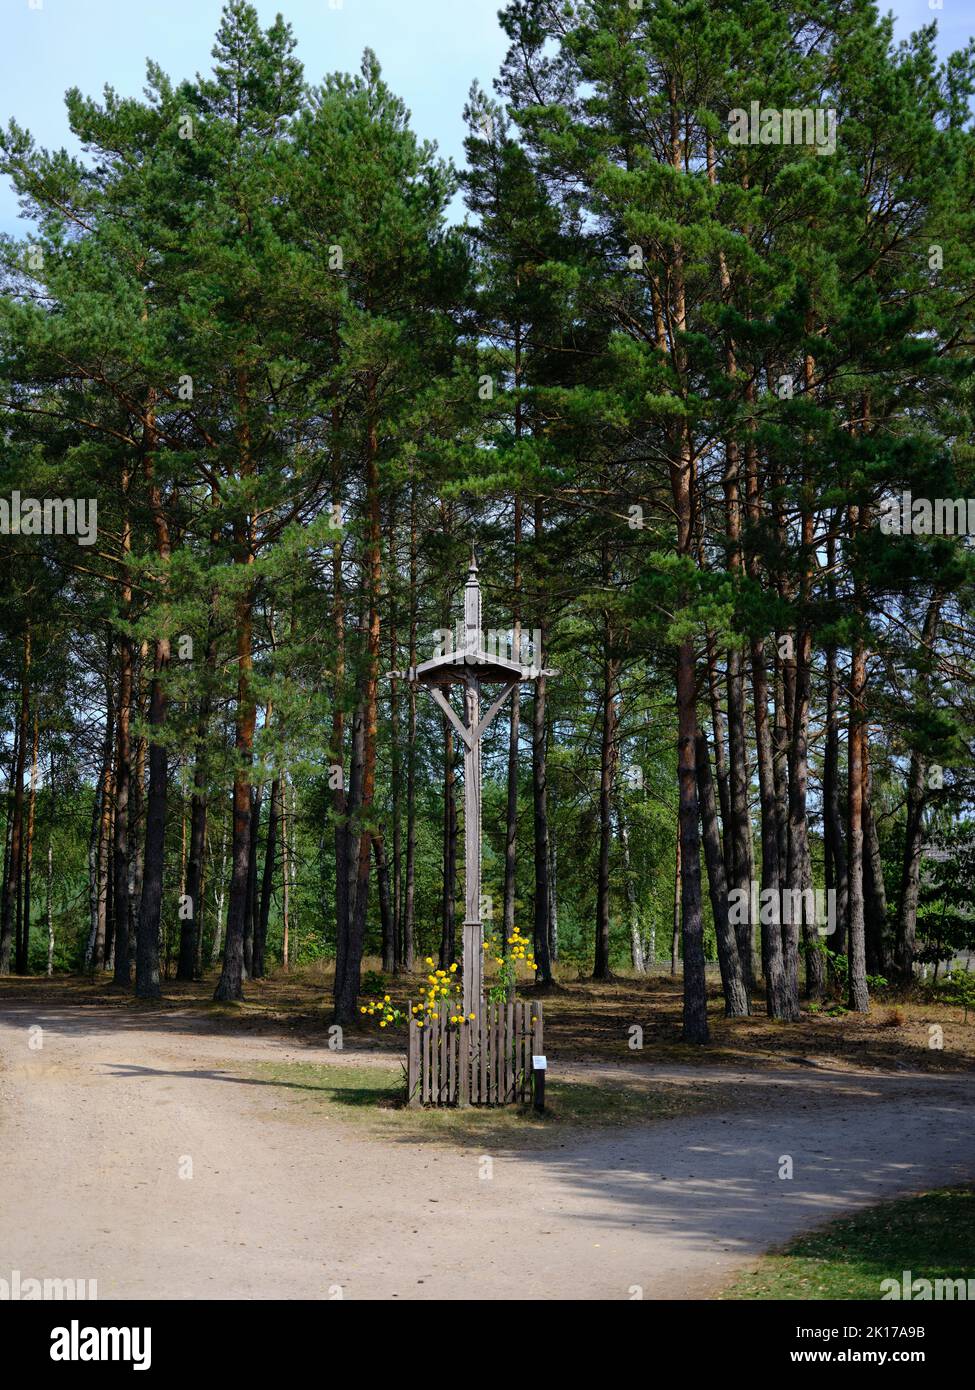 Wayside Catholic cross, on the Polish village Wdzydze Kiszewskie, Poland, Europe. Stock Photo